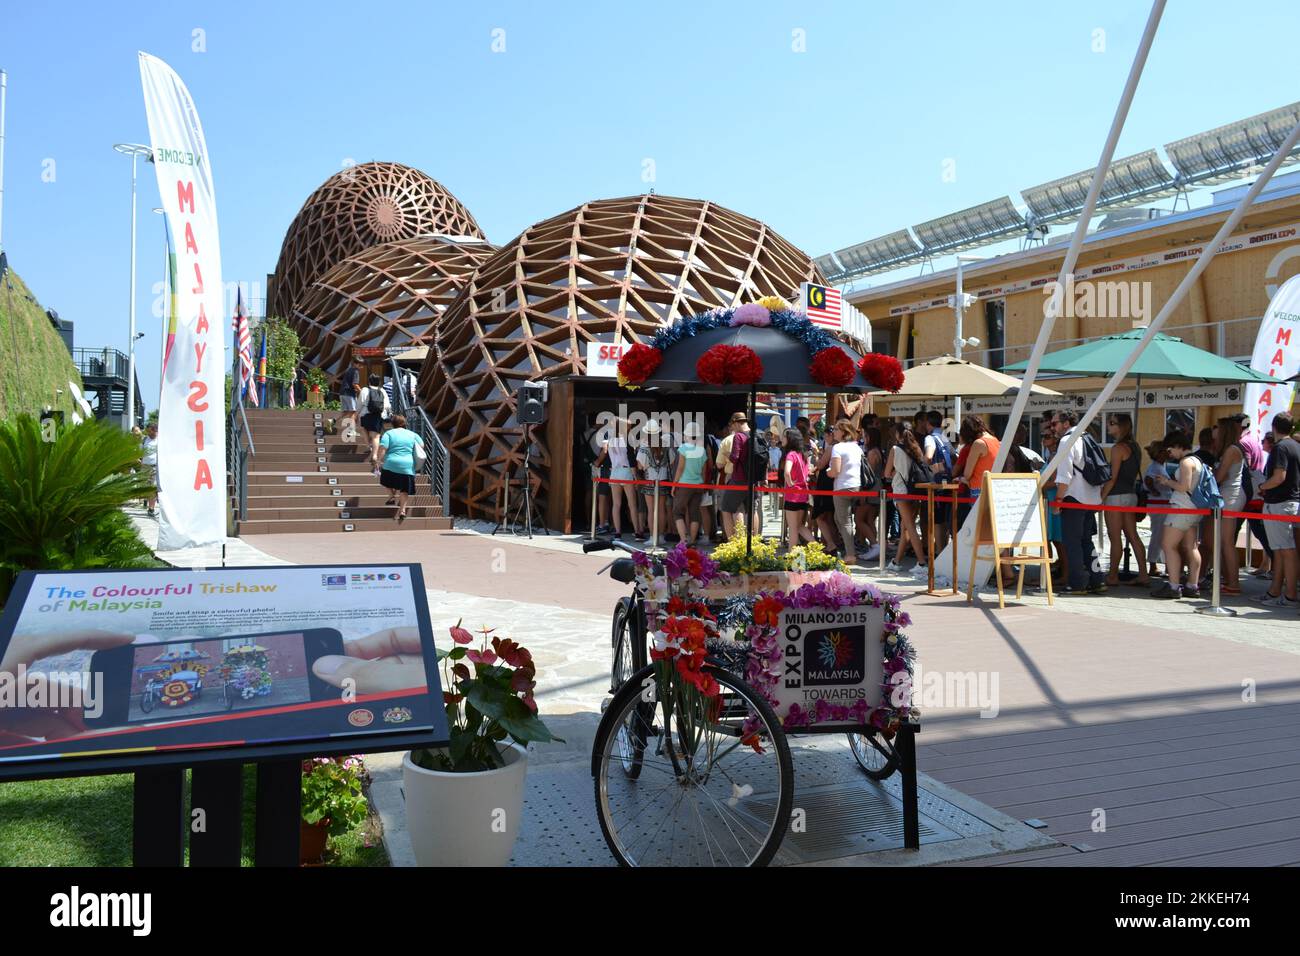 Entrée au pavillon de Malaisie à l'EXPO Milano 2015 avec un pousse-pousse décoré de fleurs en papier pour les instantanés et une file de touristes qui attendent. Banque D'Images